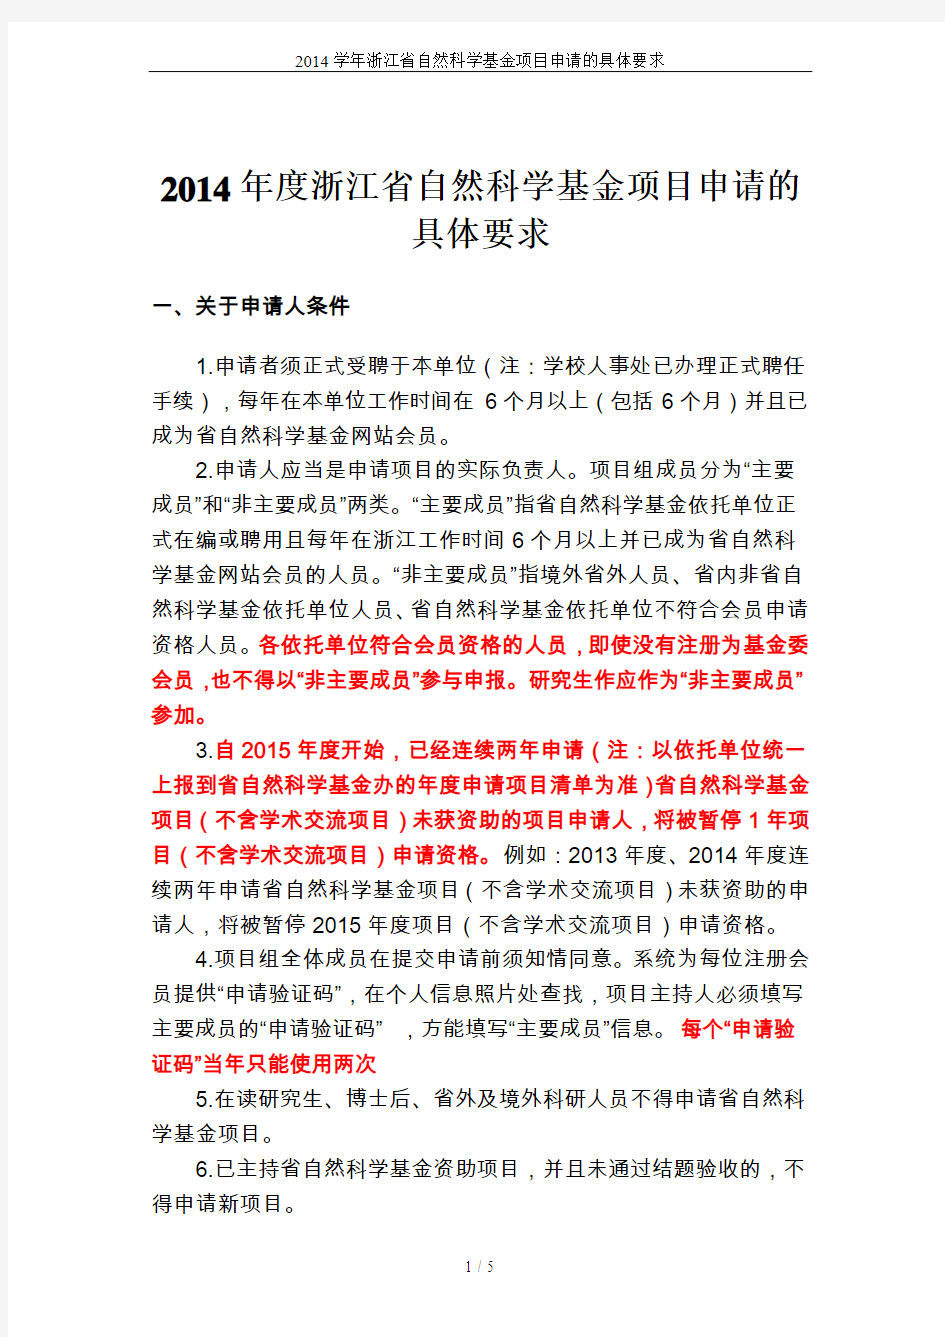 2014学年浙江省自然科学基金项目申请的具体要求